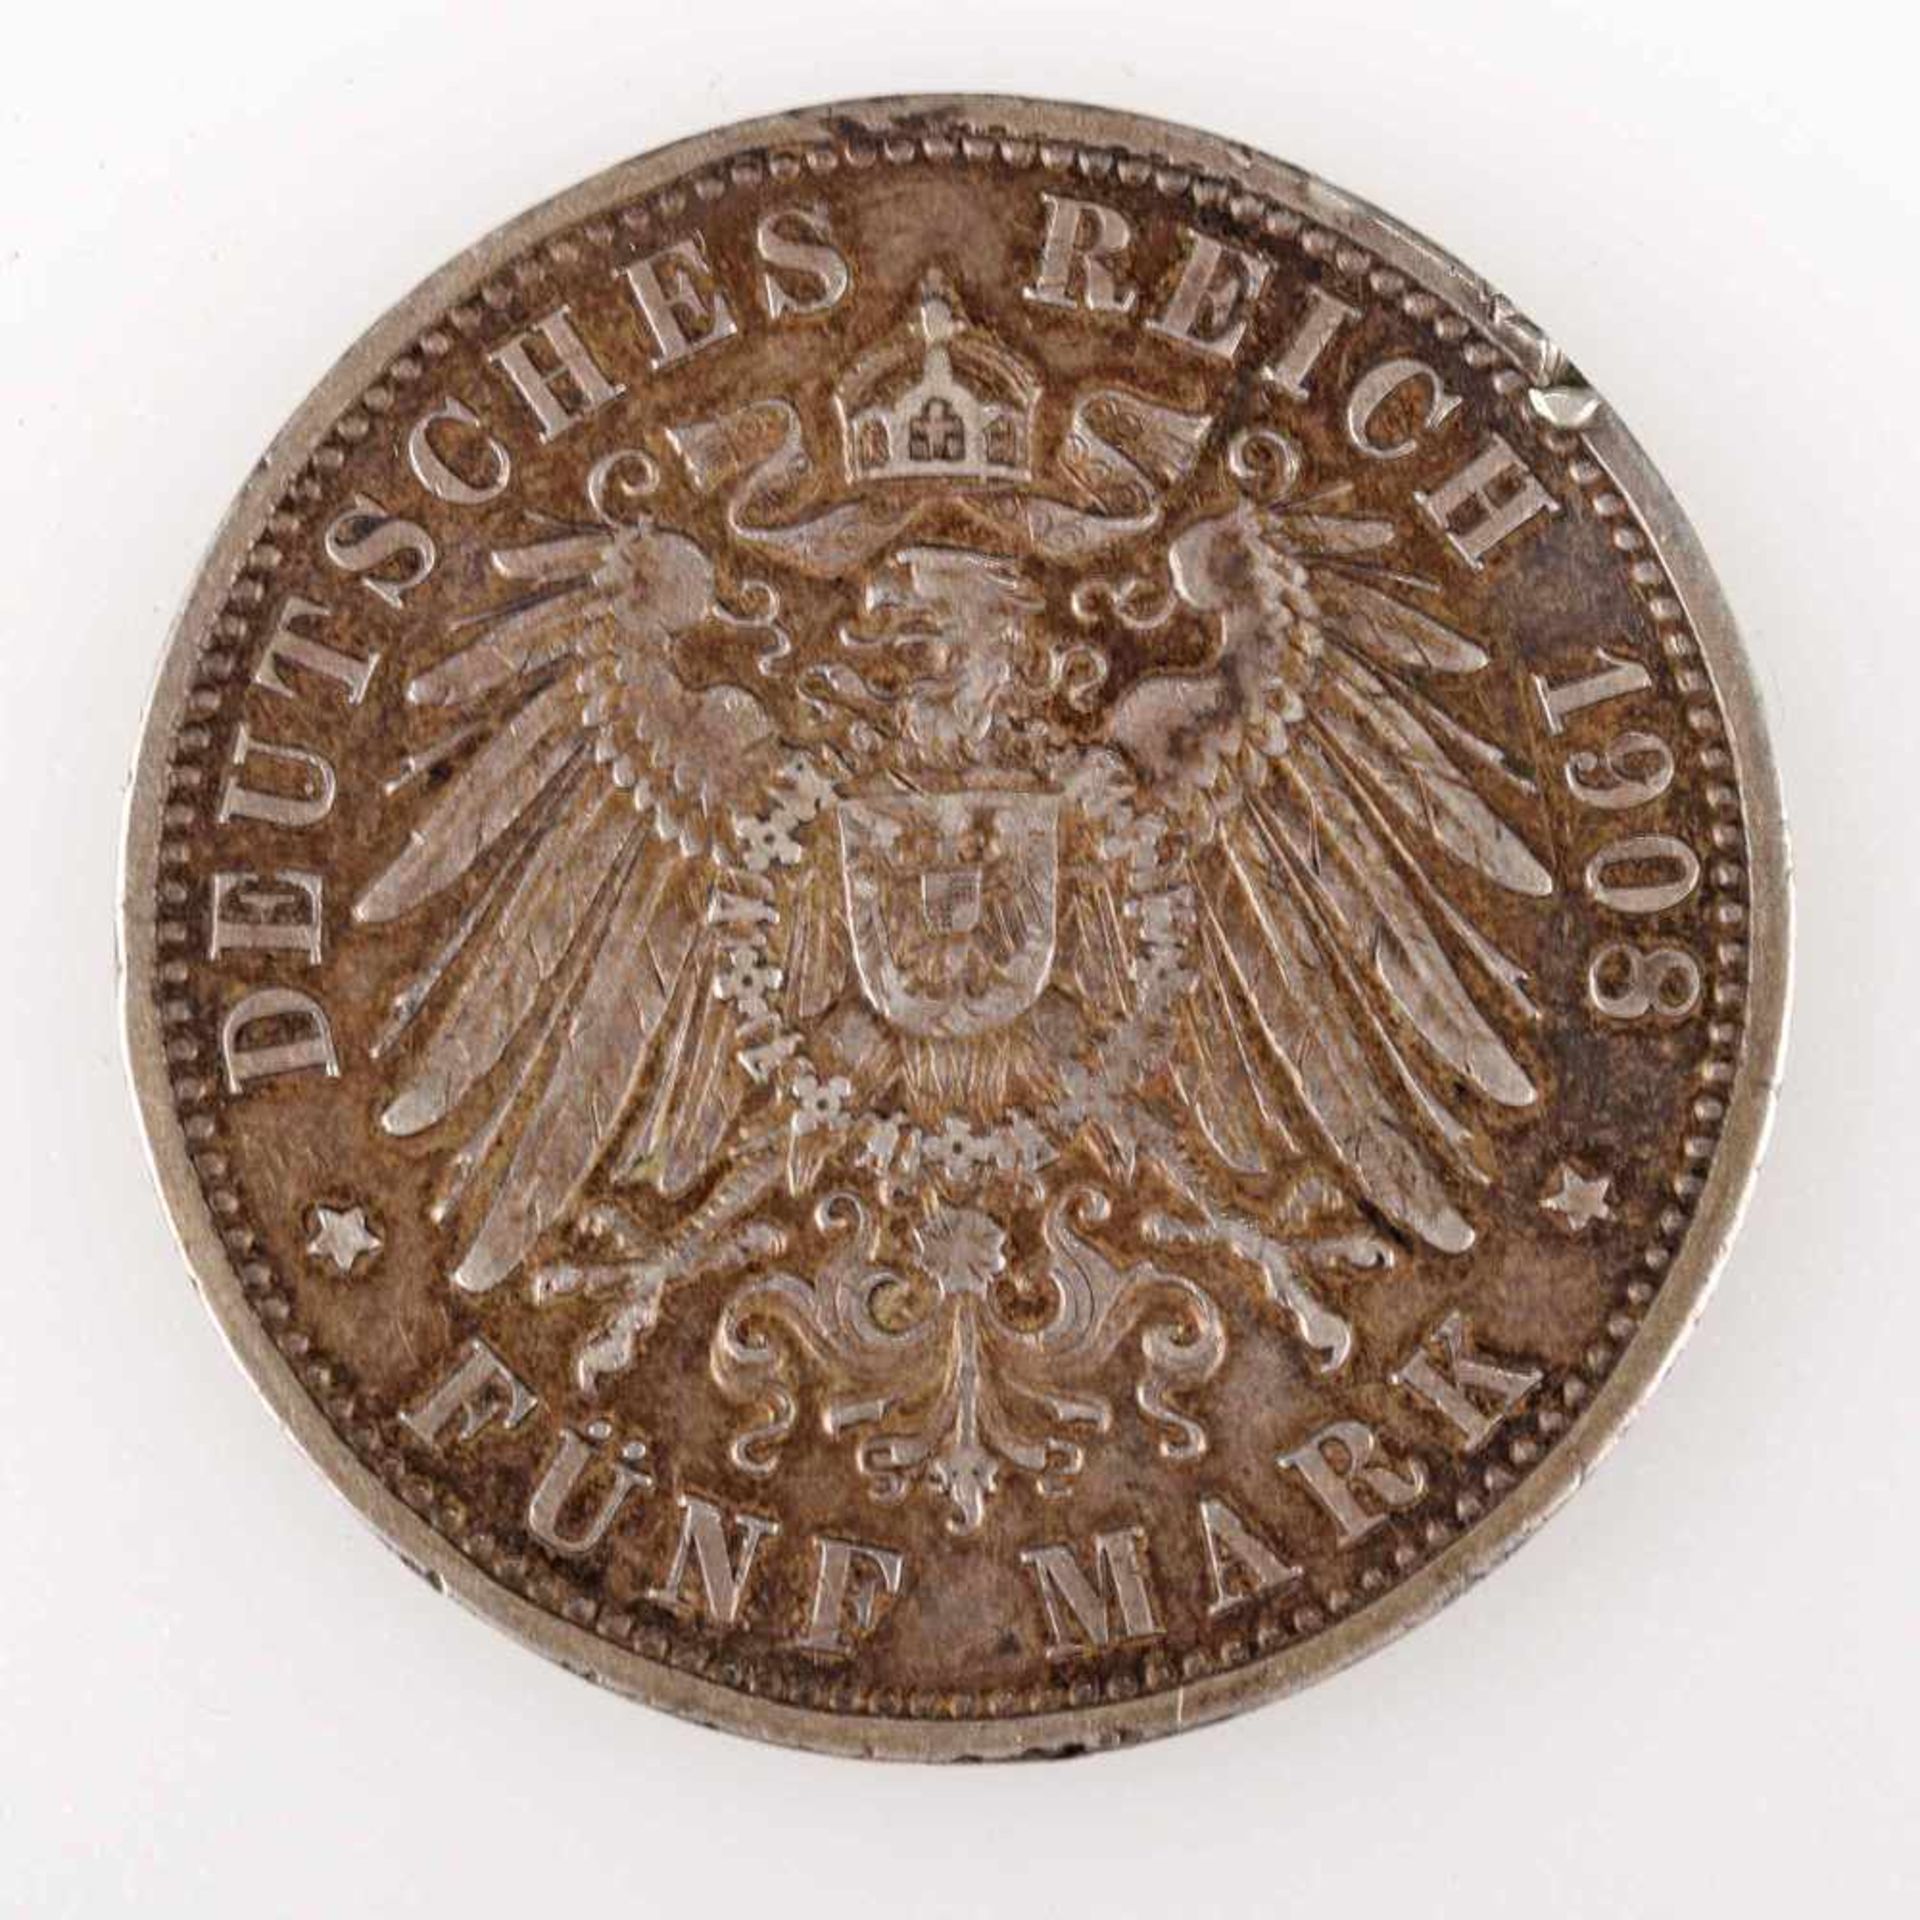 Silbermünze Kaiserreich - Baden 1908 5 Mark, av. Friedrich II. Grossherzog von Baden Kopf links, rv. - Image 3 of 3